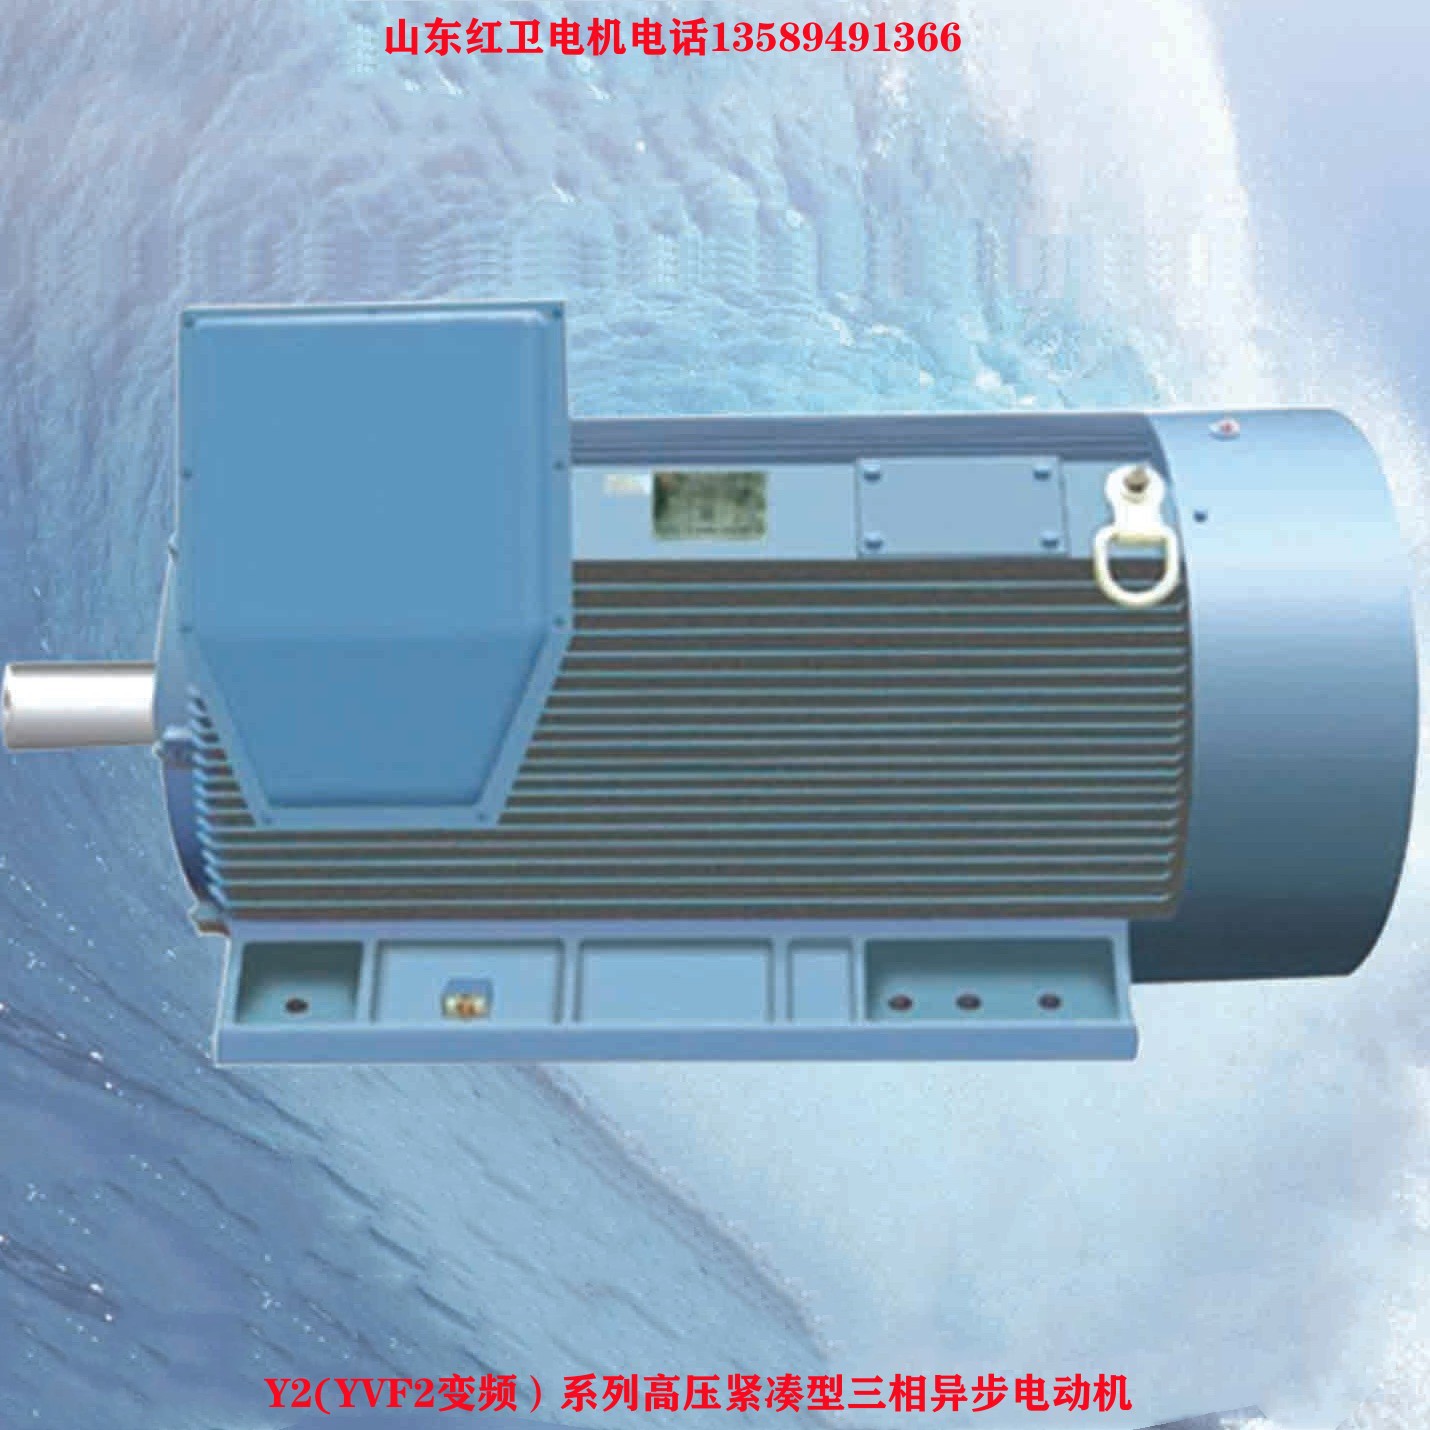 山东厂家直供 Y2-500-2/800KW 紧凑型大功率三相异步电动机 质保